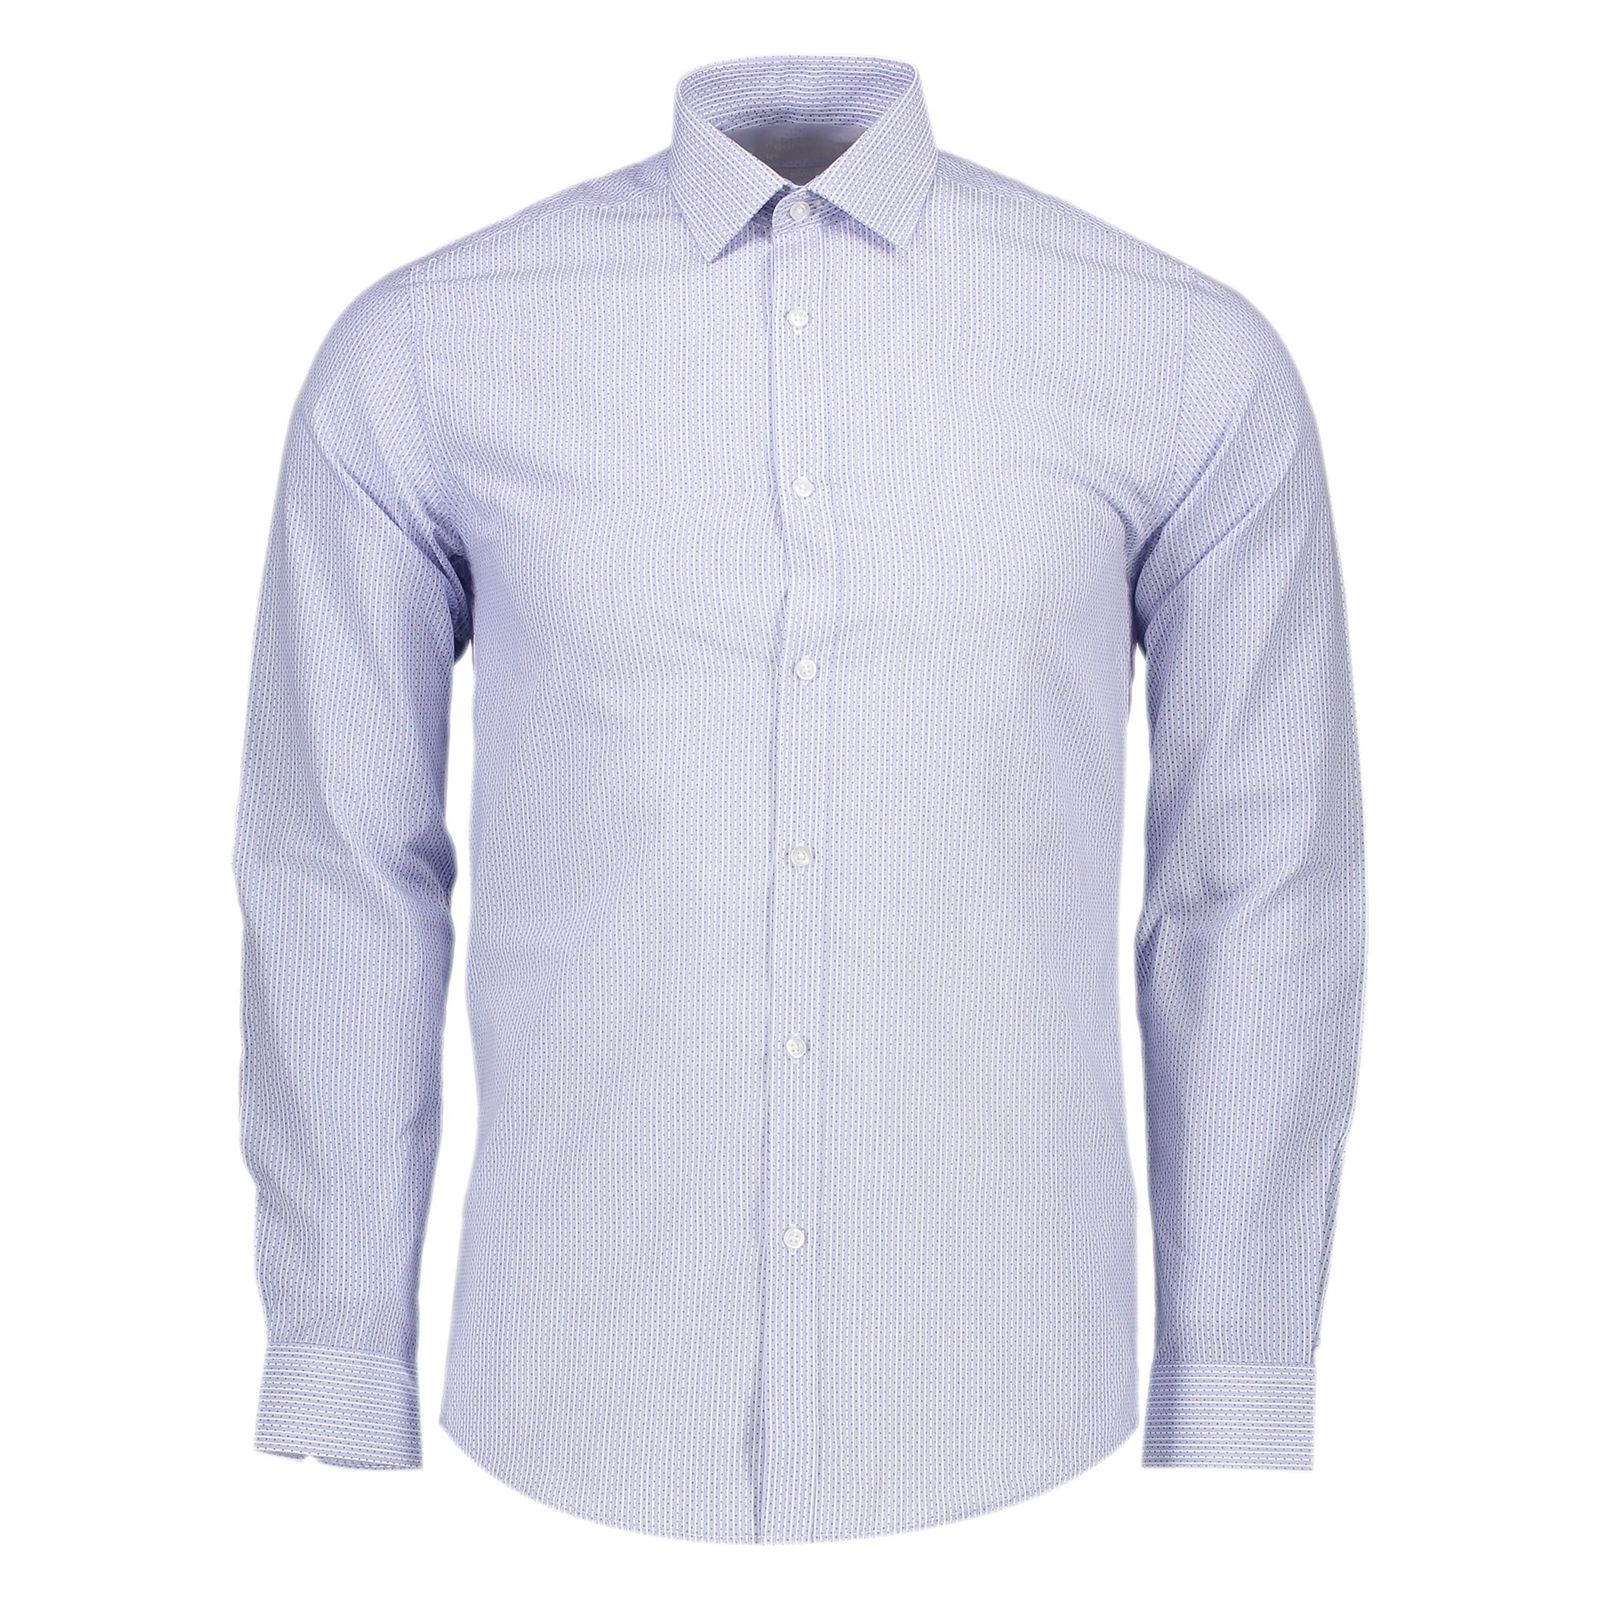 پیراهن رسمی مردانه - رد هرینگ - آبي روشن - 2